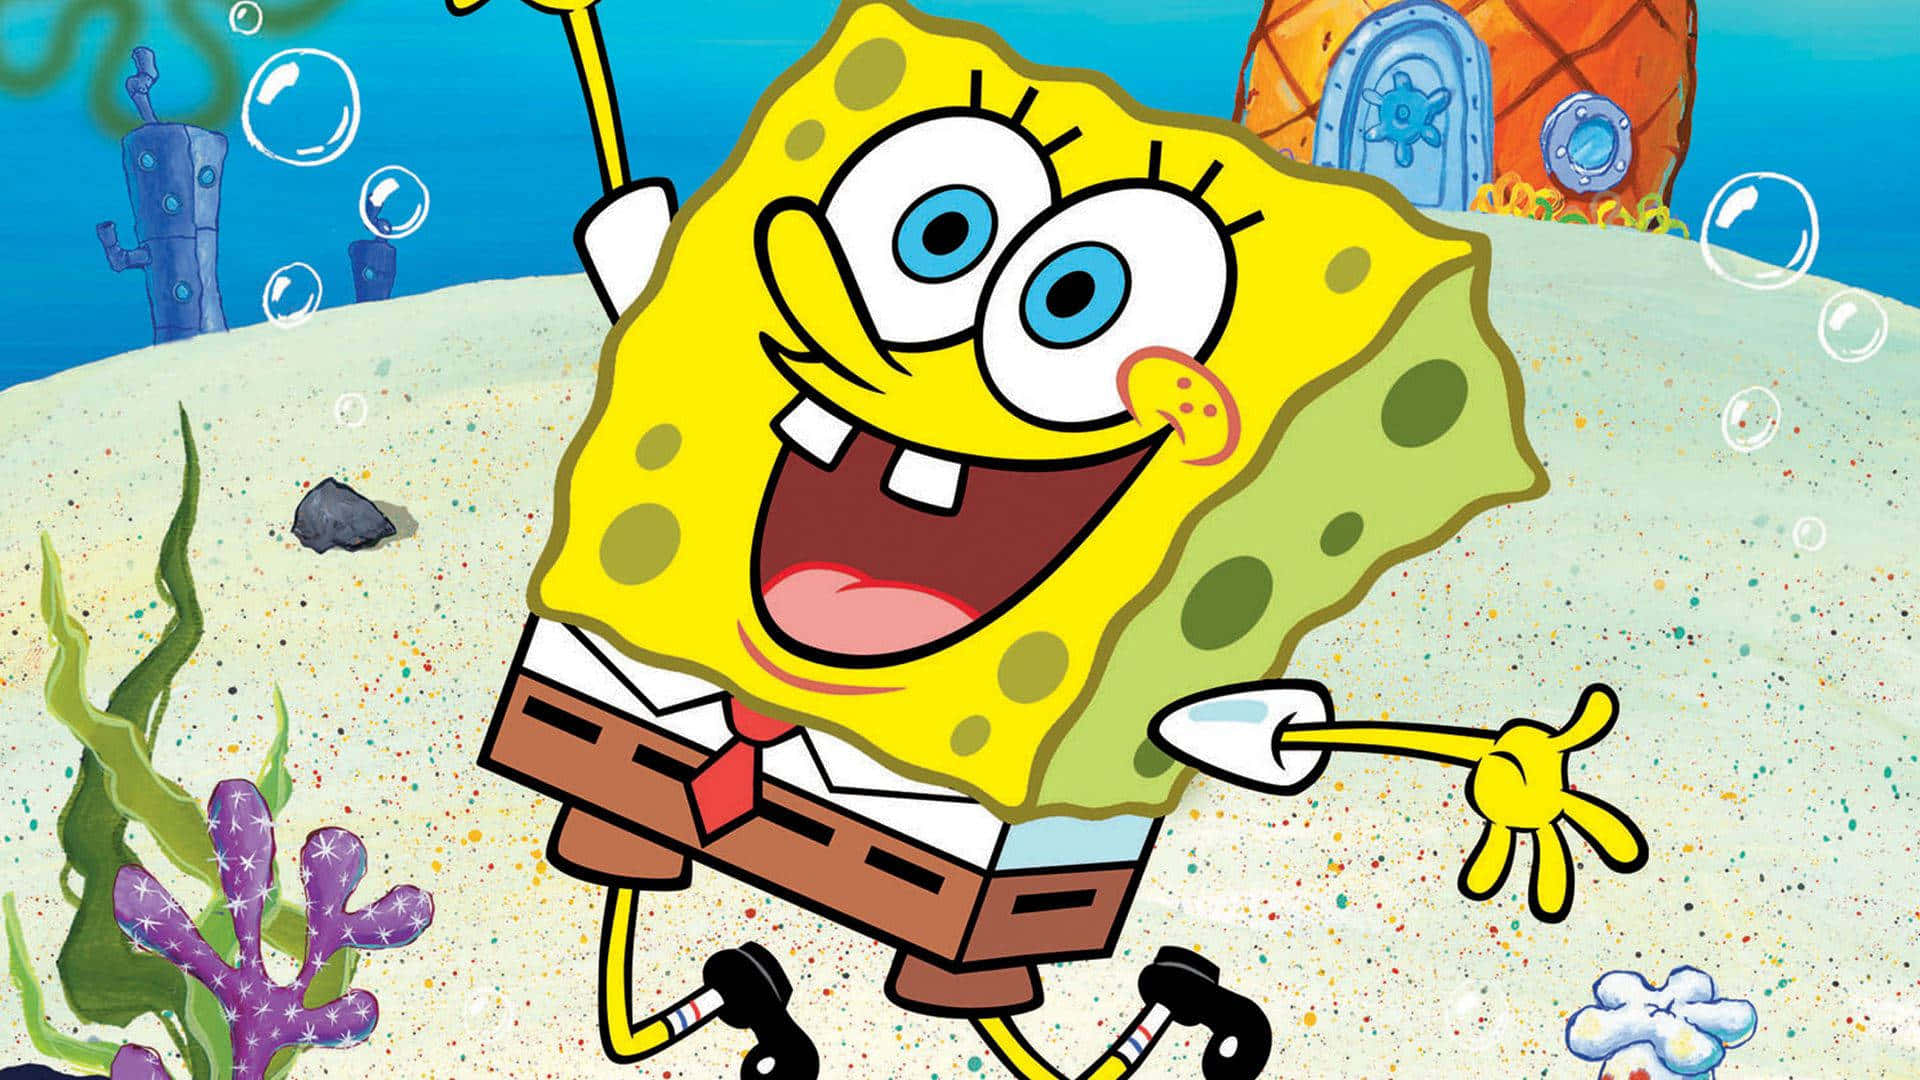 Immaginedel Salto Di Spongebob Squarepants